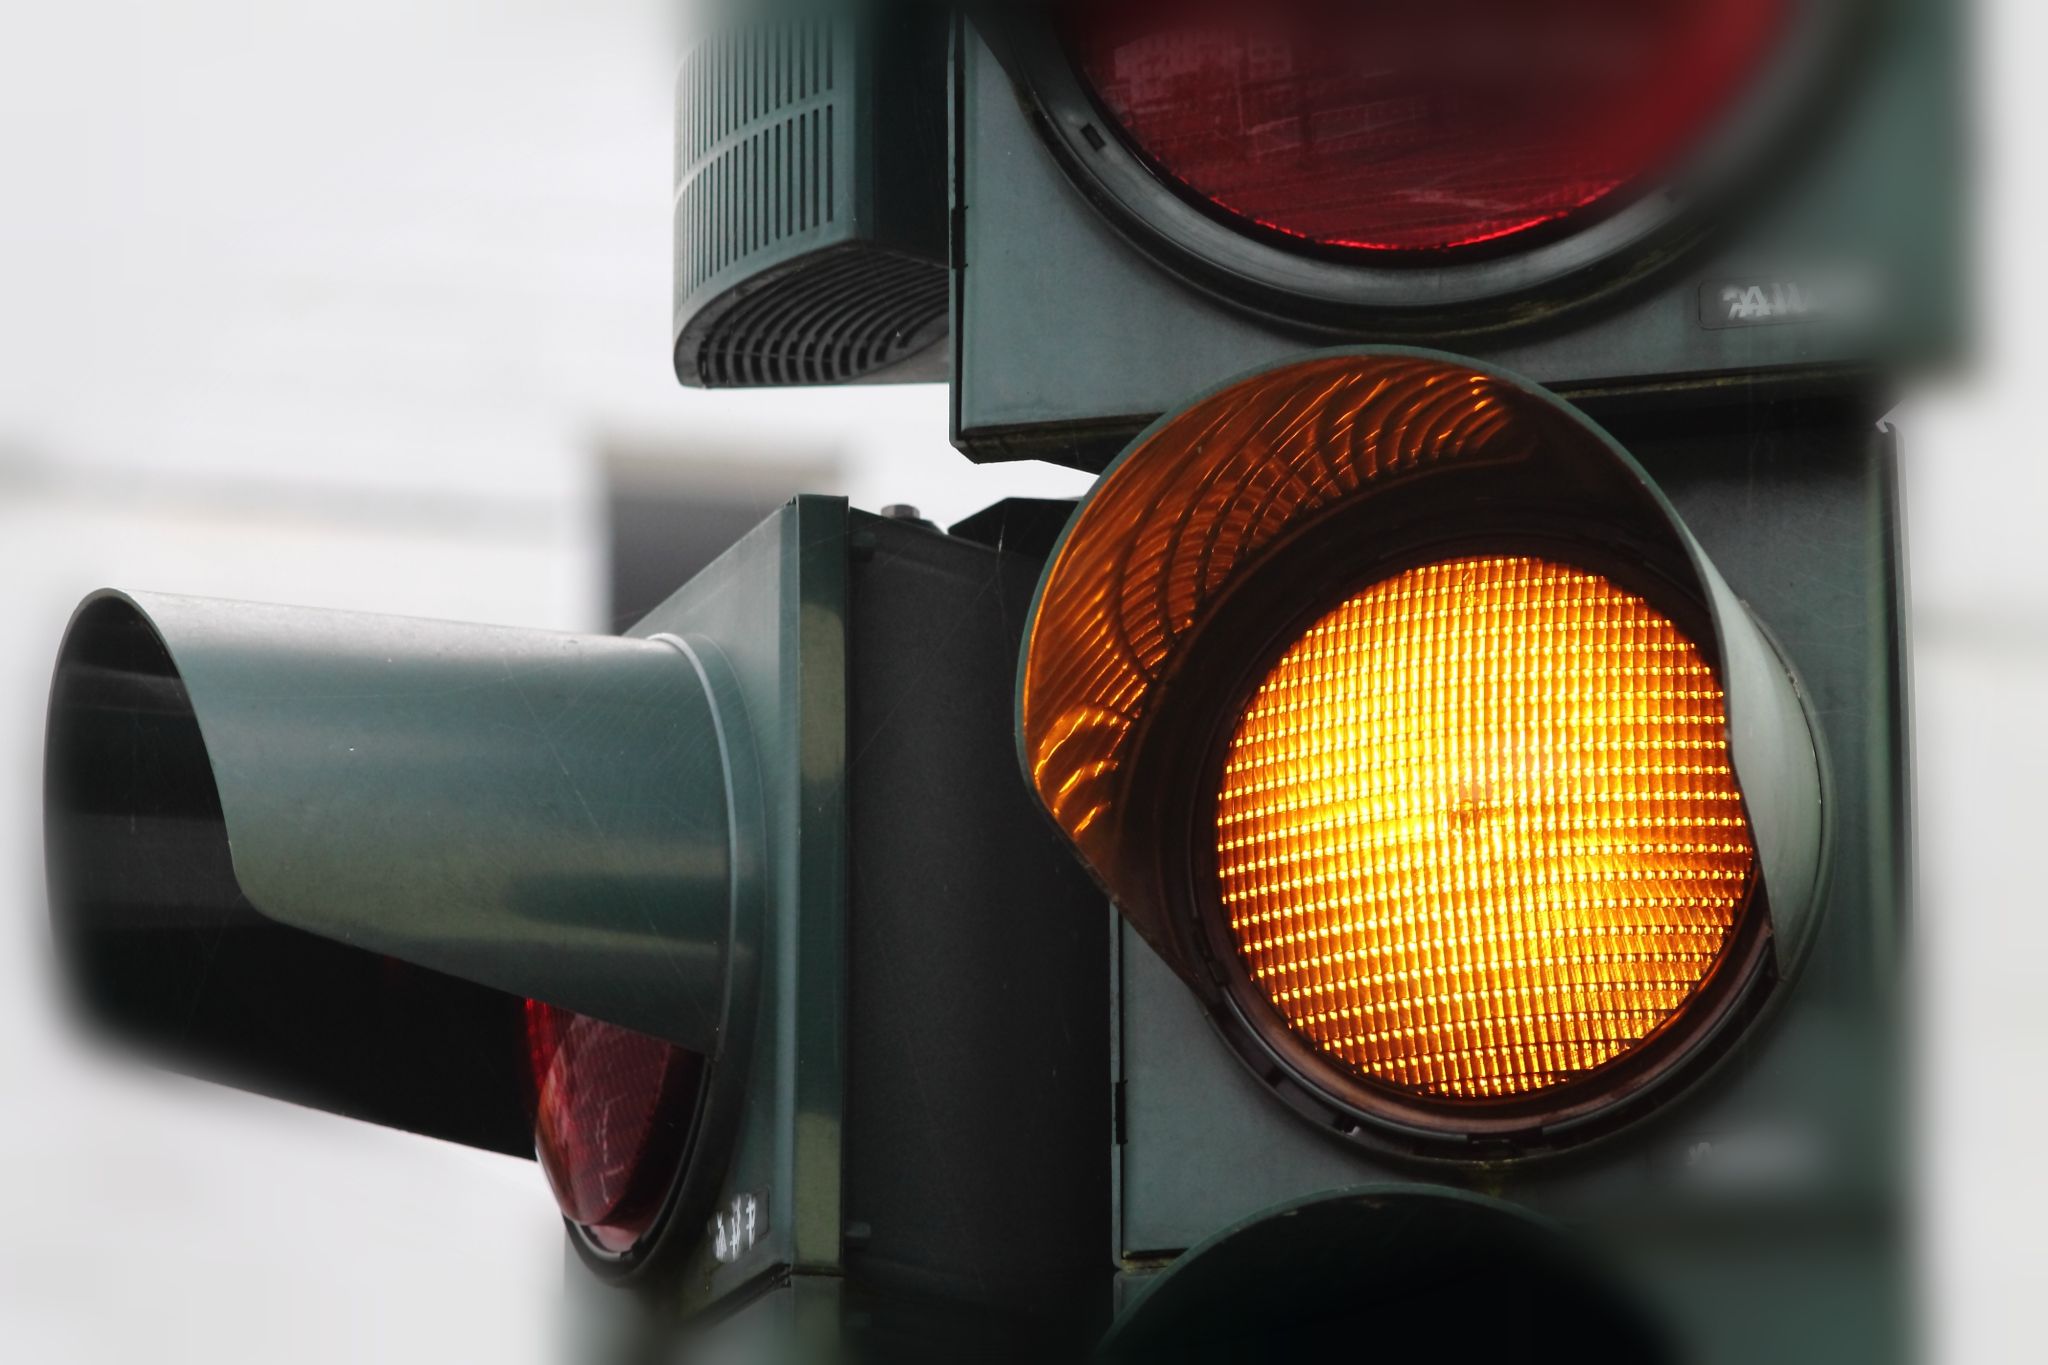 O que fazer com o semáforo amarelo piscante? De quem é a preferência